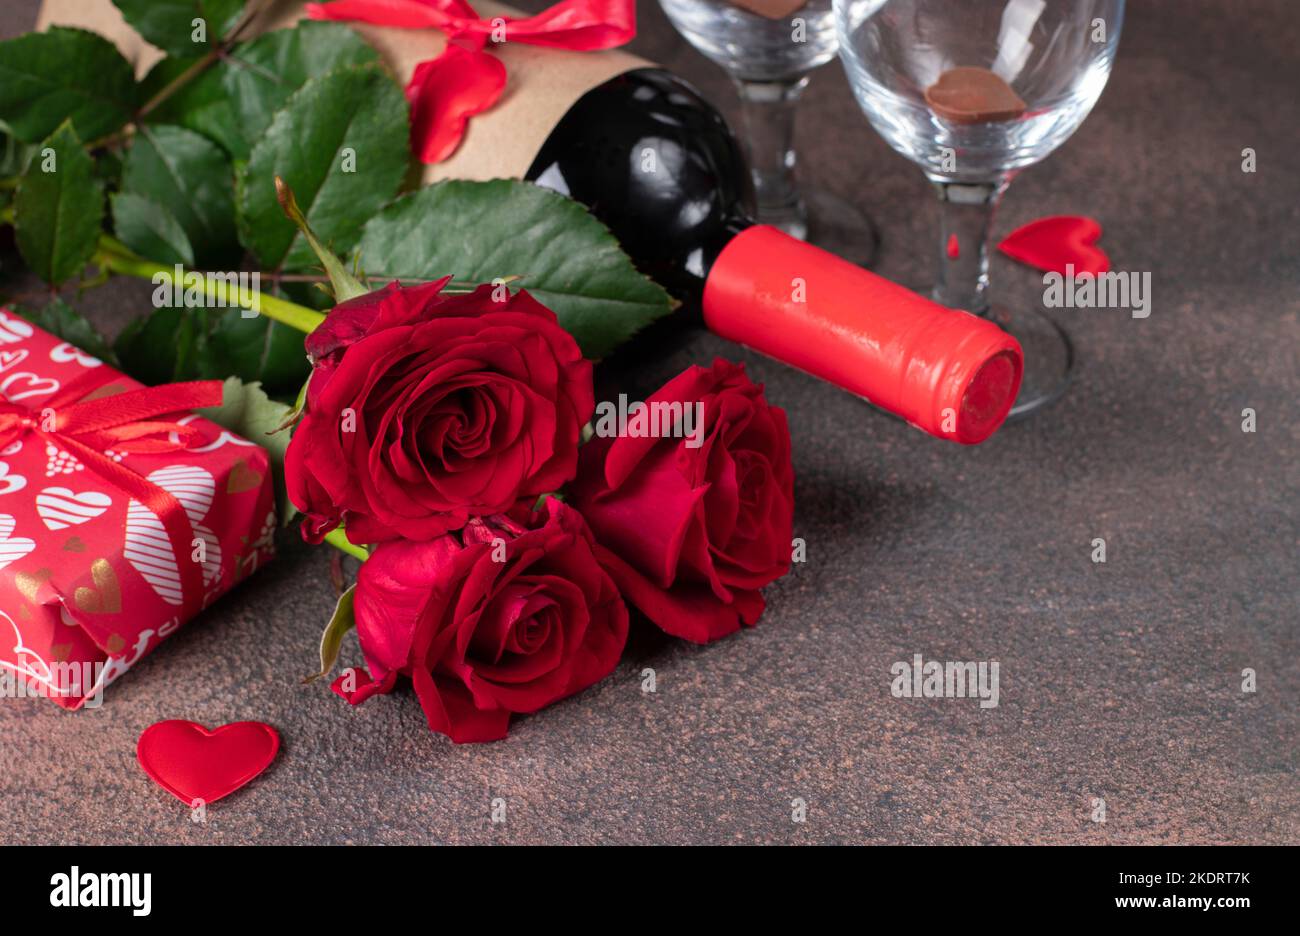 Coffret cadeau st-valentin - coeur et vin rouge - Un grand marché